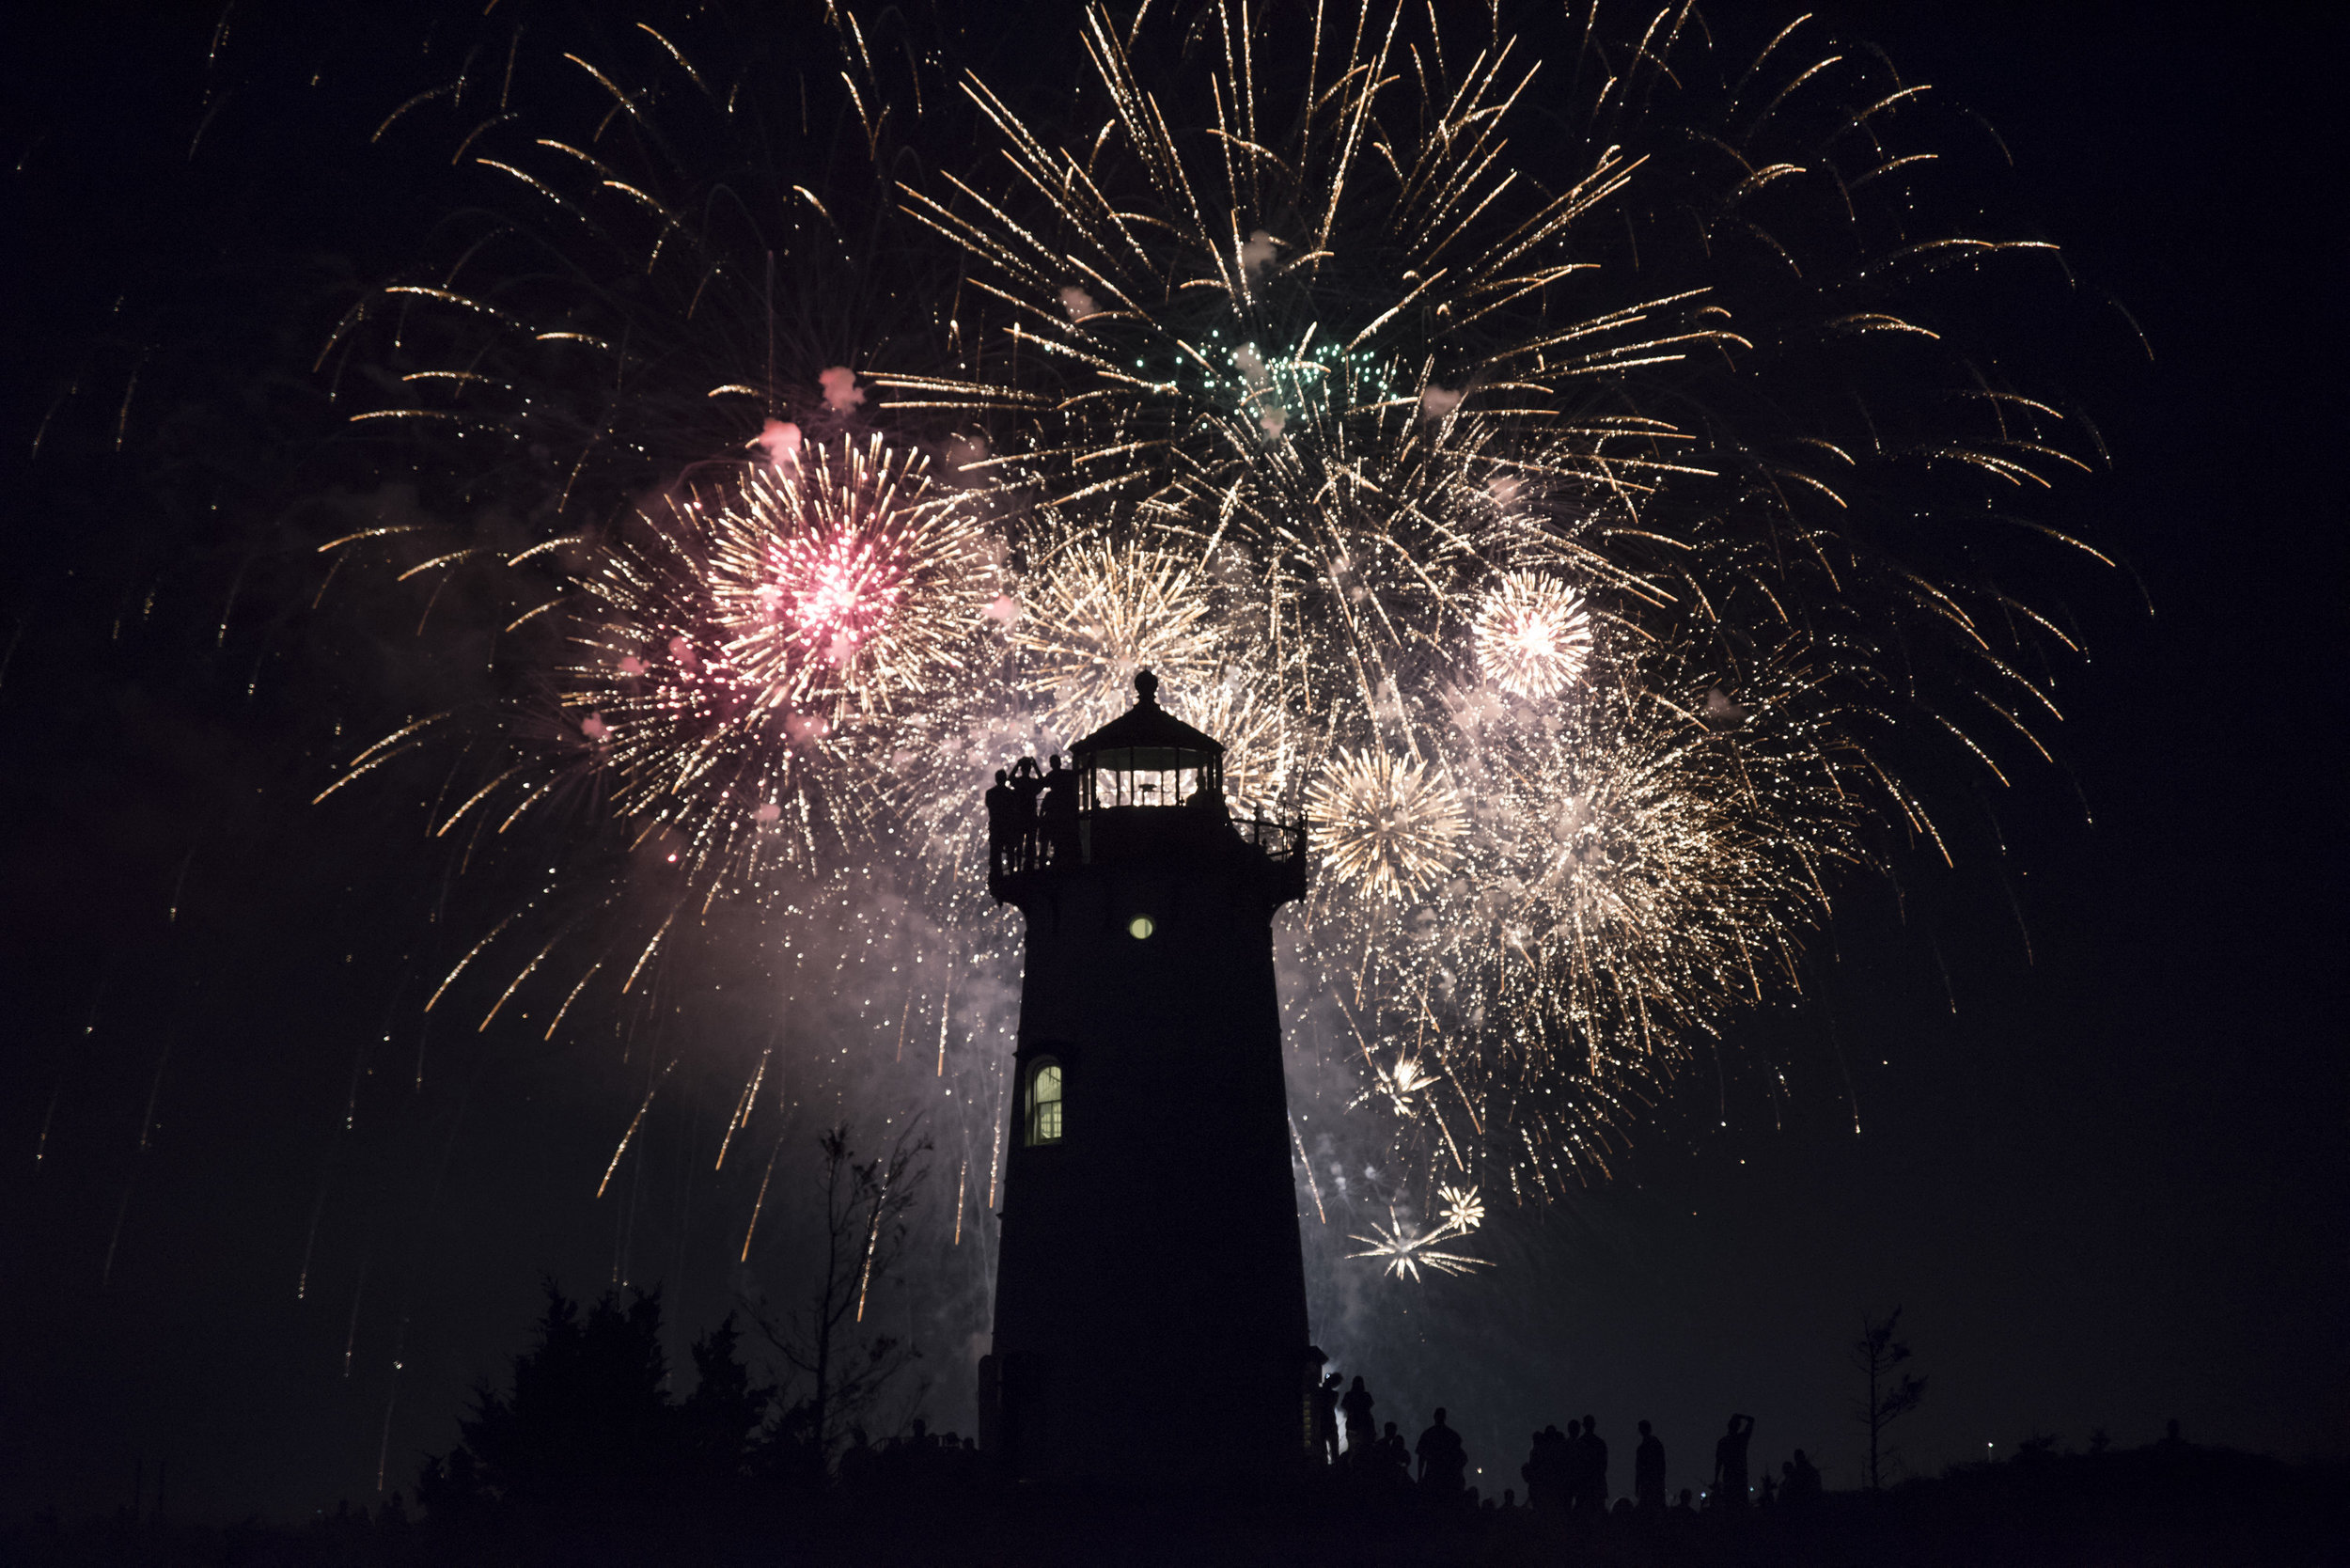  Fireworks explode behind the Edgartown Light House in Edgartown, Massachusetts.  